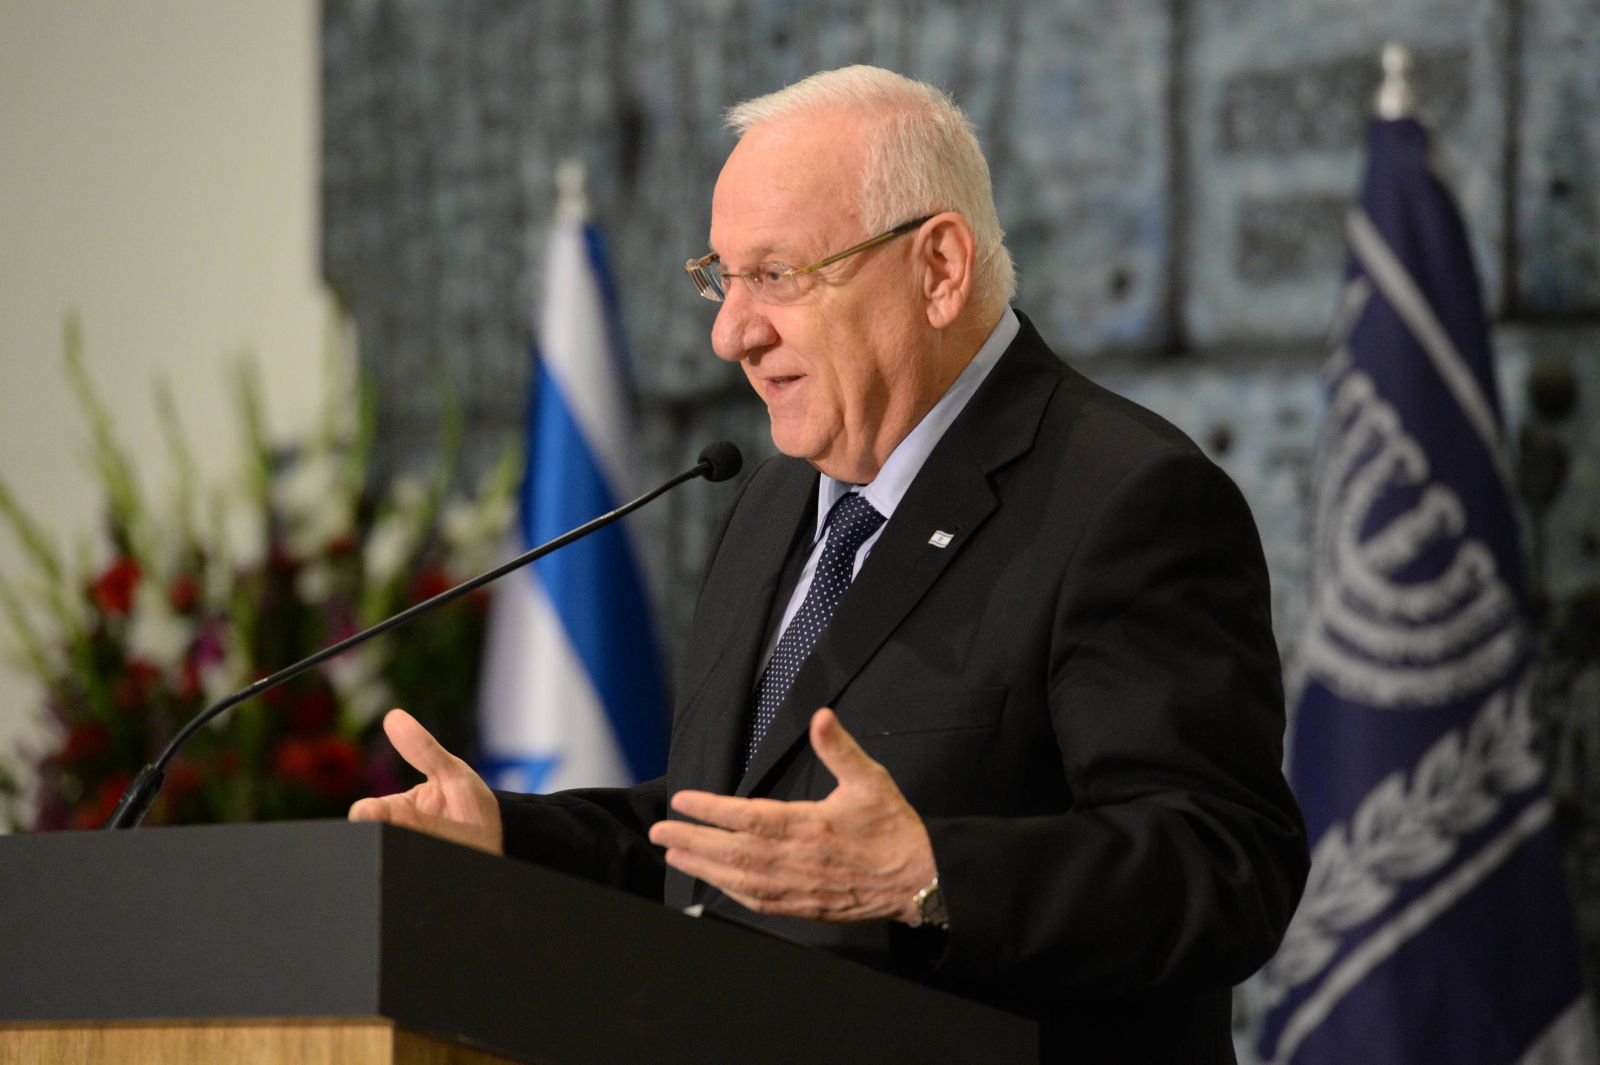 الرئيس الإسرائيلي: “لا خيار أمامنا سوى الوصول إلى اتفاق مع الفلسطينيين”